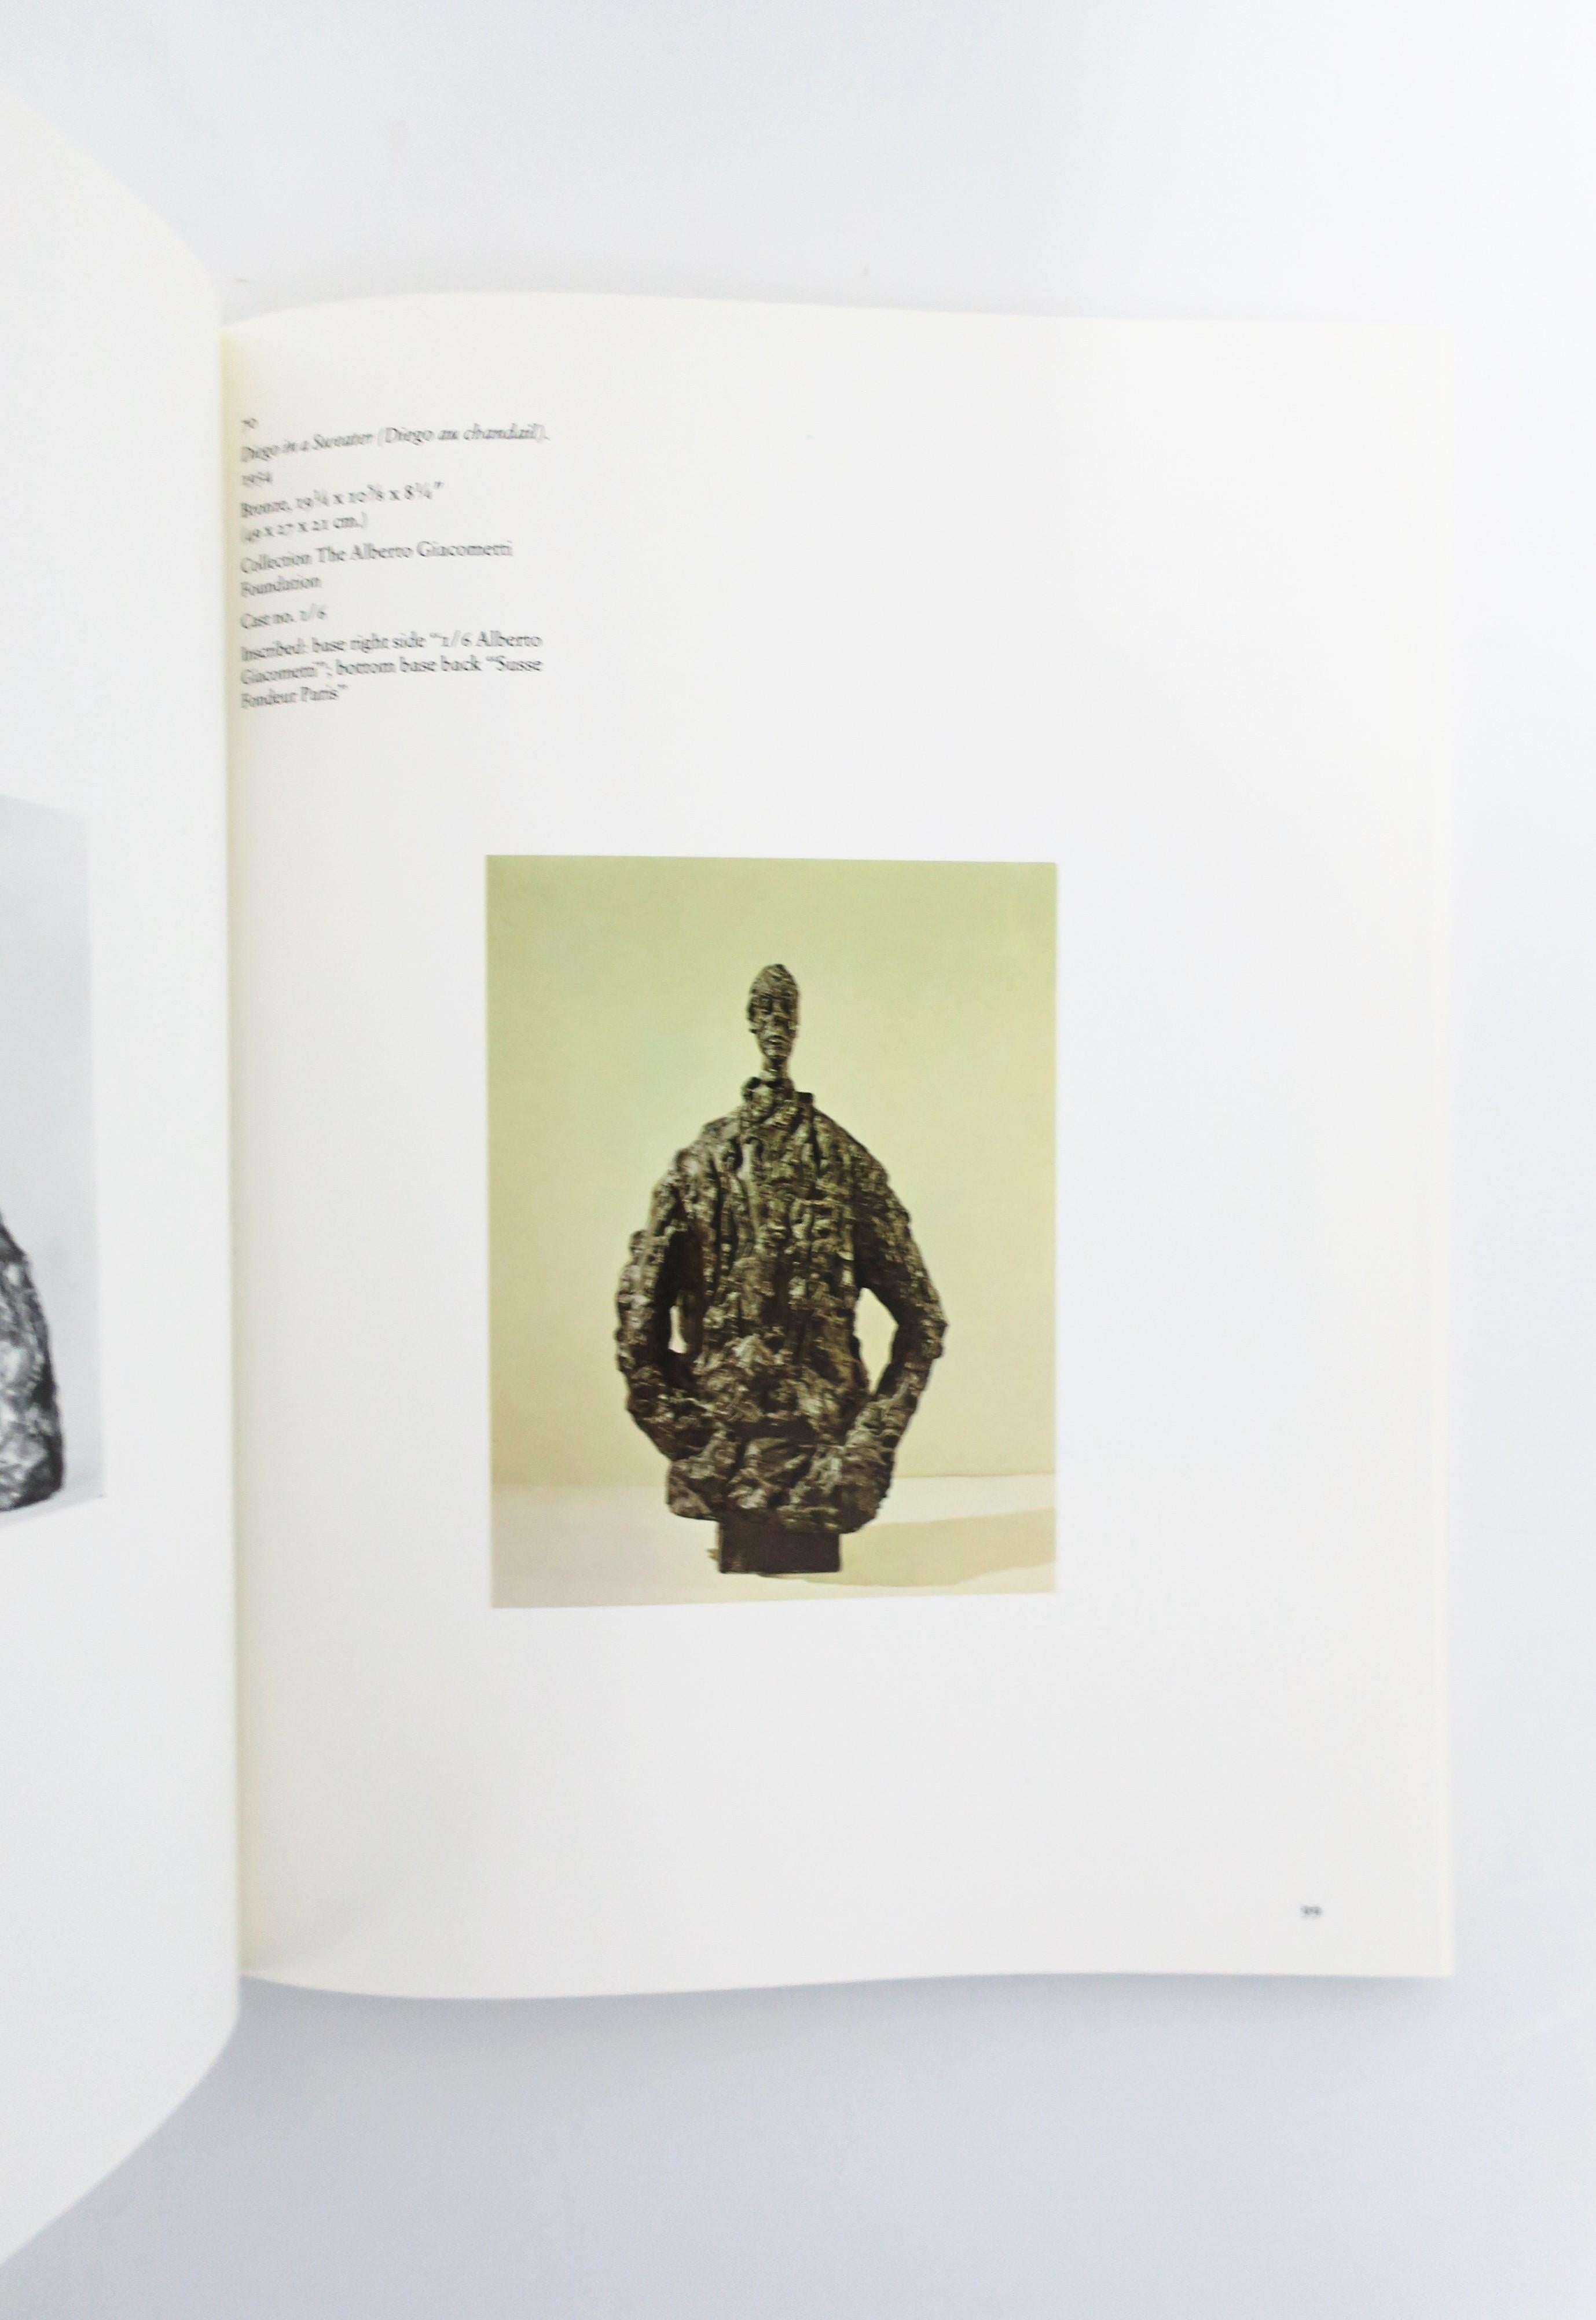 Alberto Giacometti A Retrospective Exhibition Book, 1974, New York 5